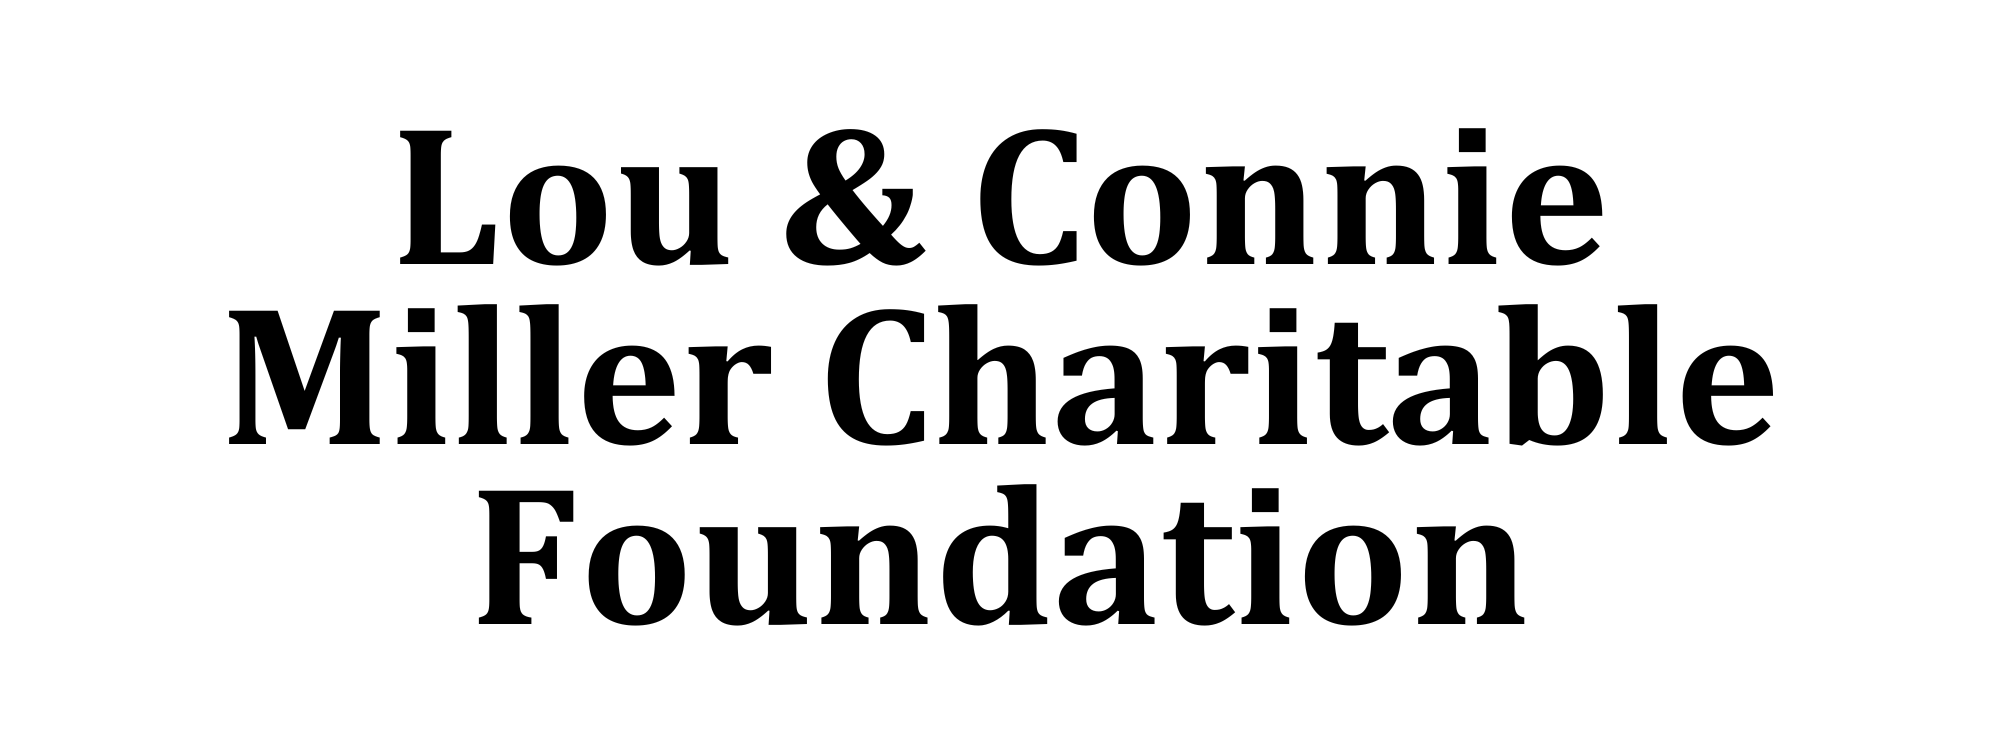 Miller Charitable Foundation logo.png